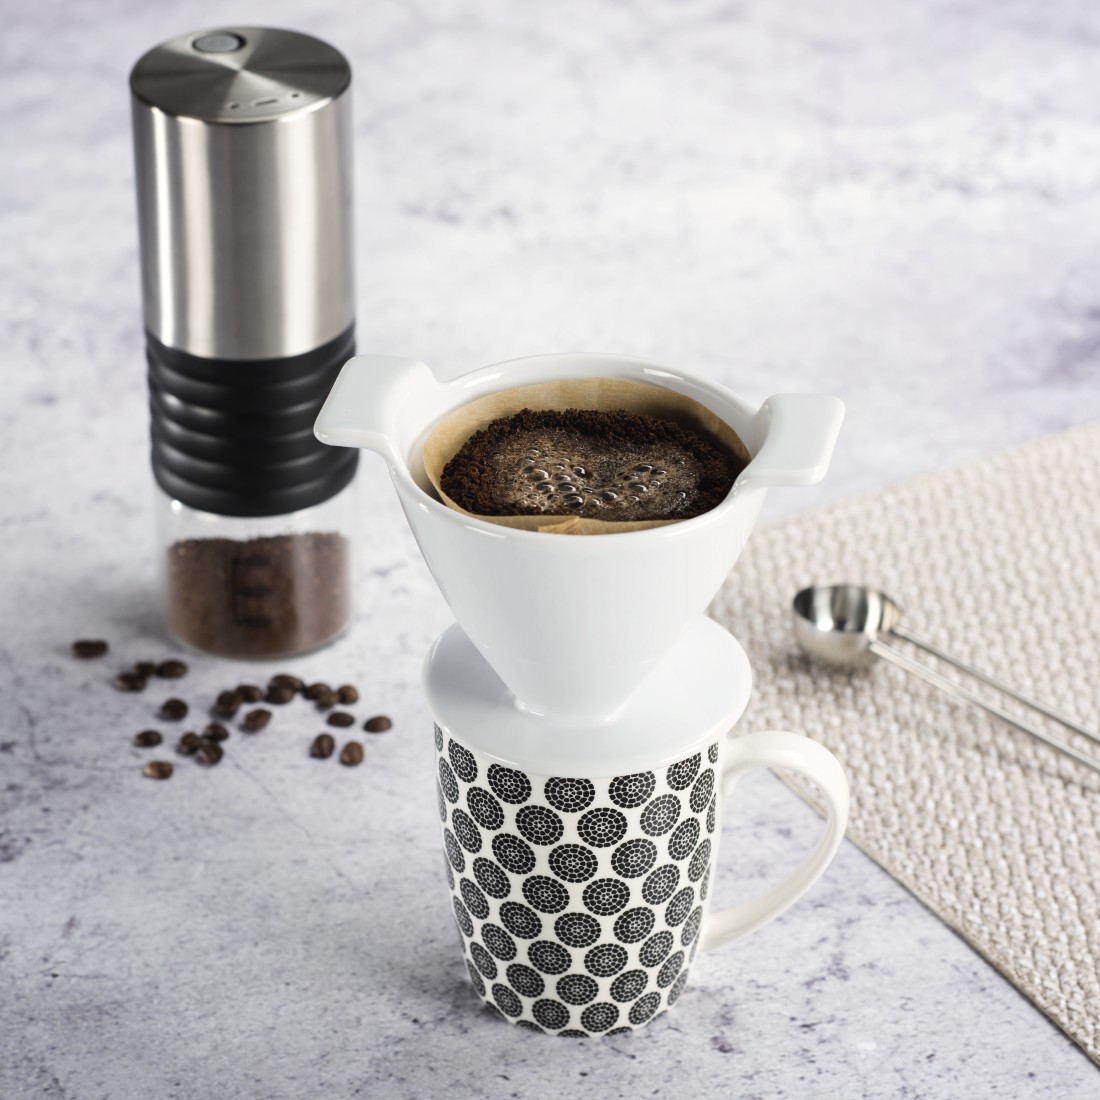 awx4 Druckfähige Anwendung 4 - Xavax, Kaffeefilter aus Porzellan, Größe 4, Weiß